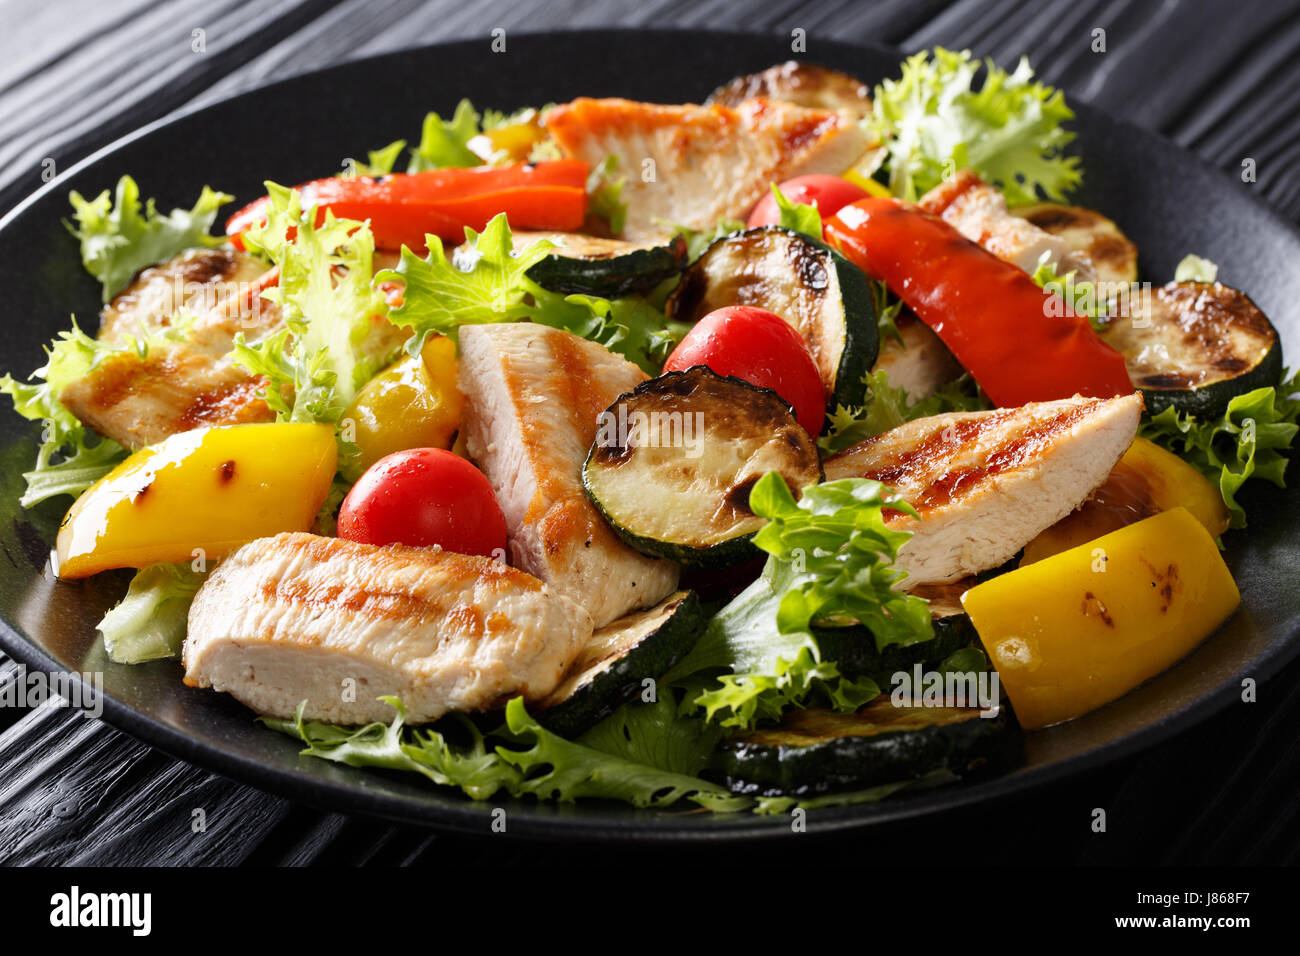 Insalata tiepida di verdure grigliate e pollo close-up su una piastra orizzontale. Foto Stock